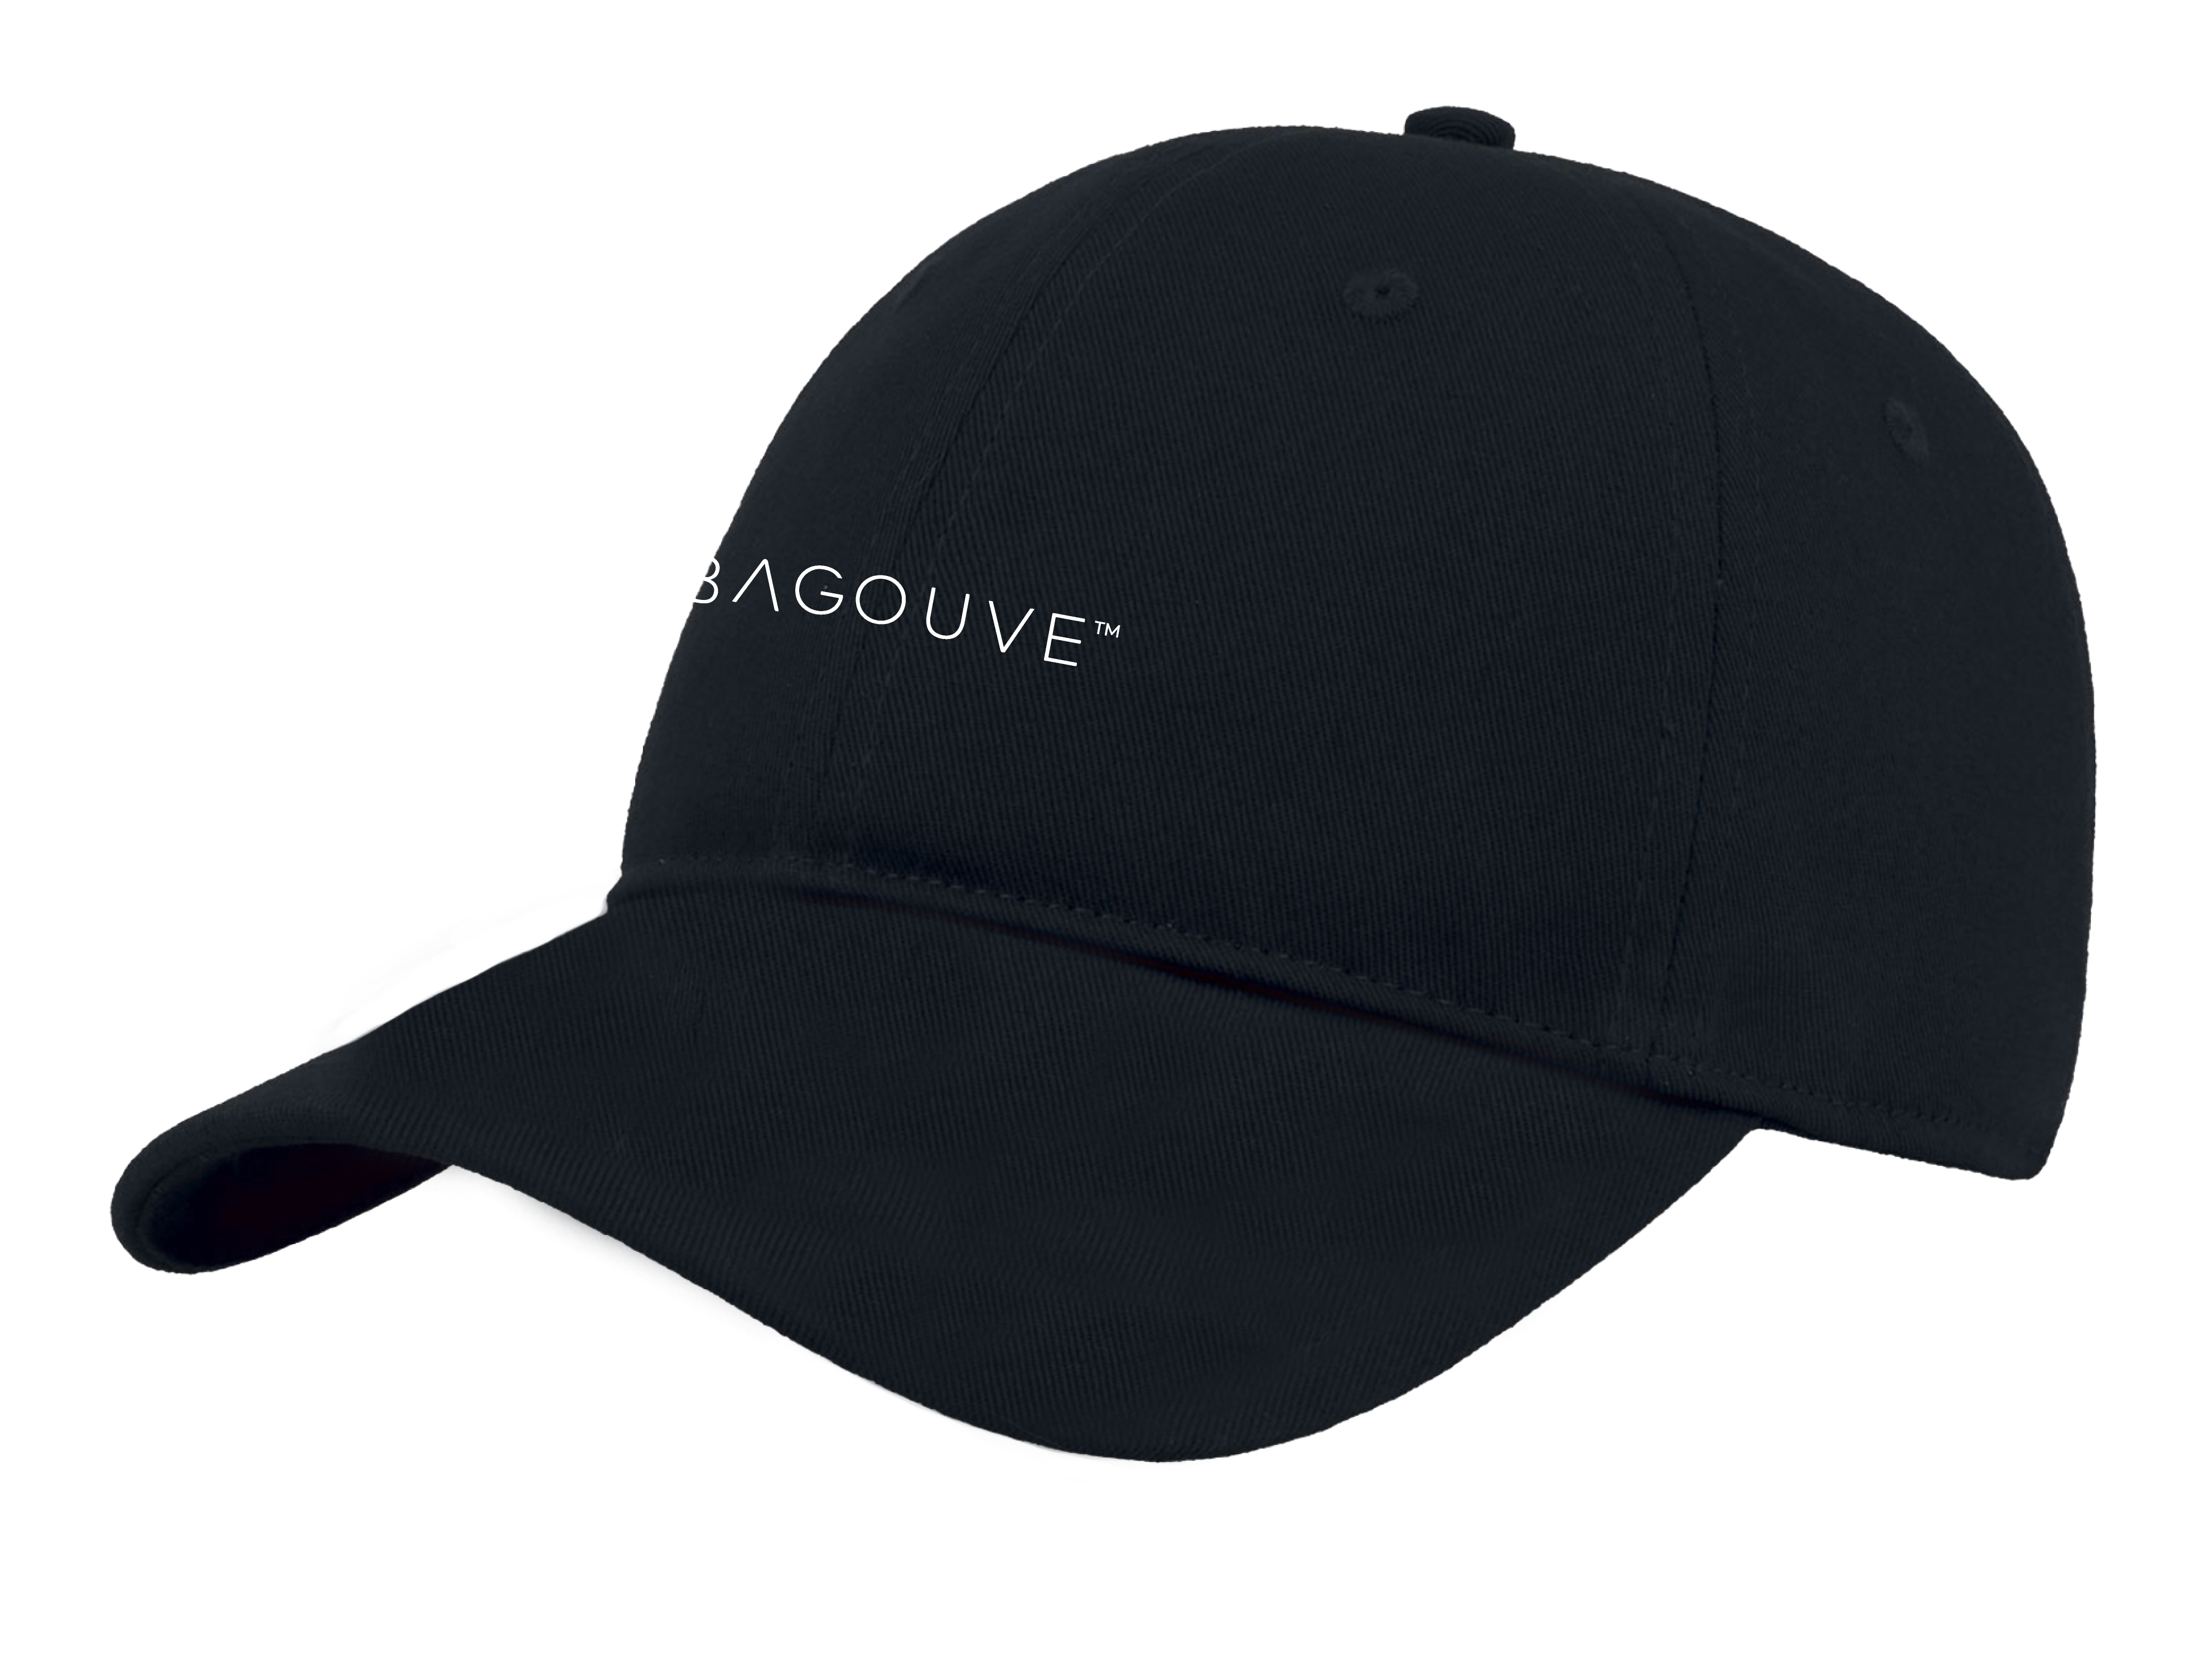 BAGOUVE™ ORGANIC COTTON CAP